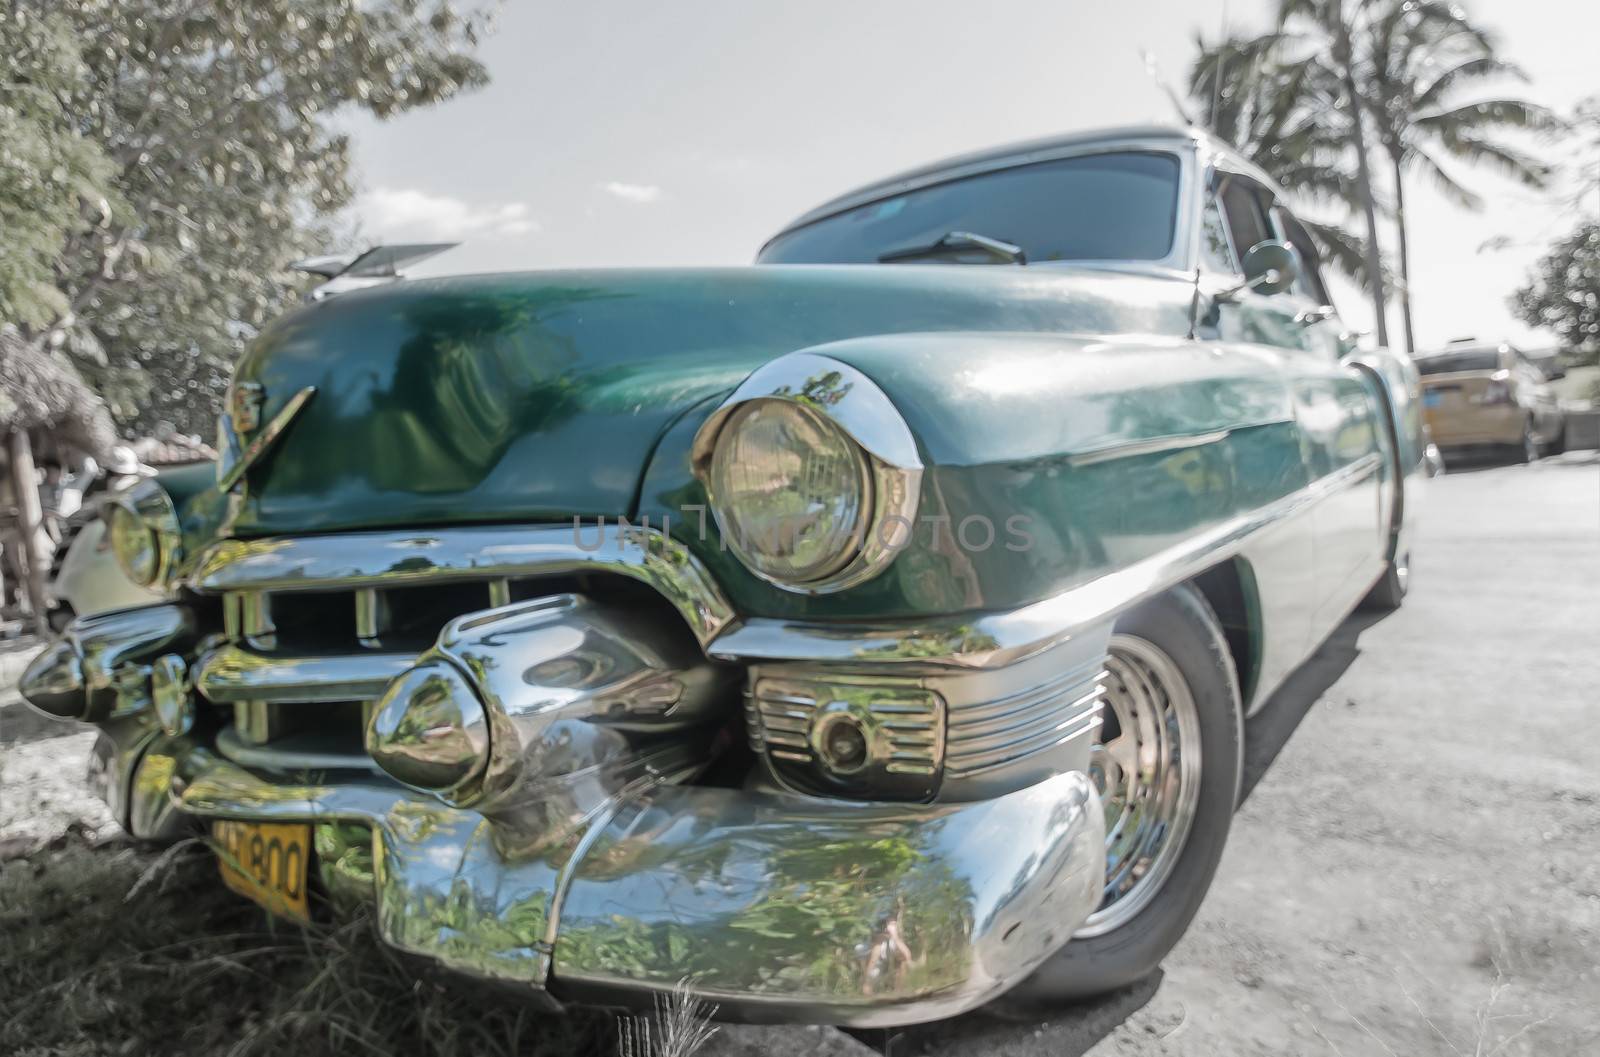 Cuba vinatage Car Caribbean by weltreisendertj